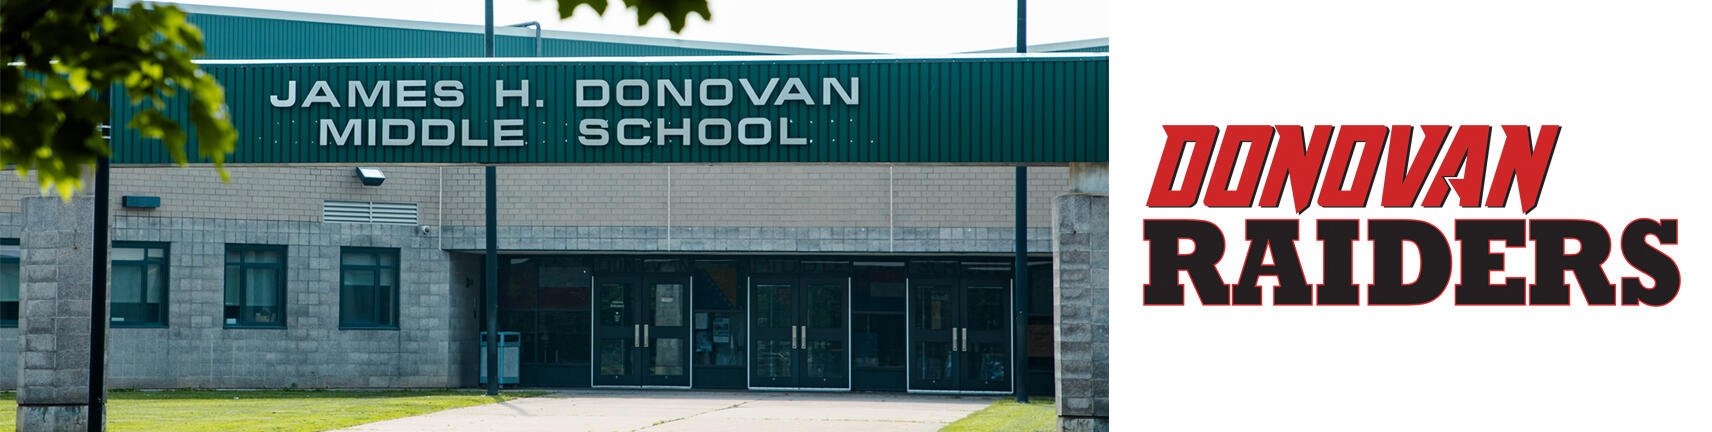 รูปภาพของอาคารโรงเรียน Donovan และโลโก้ Donovan Raiders